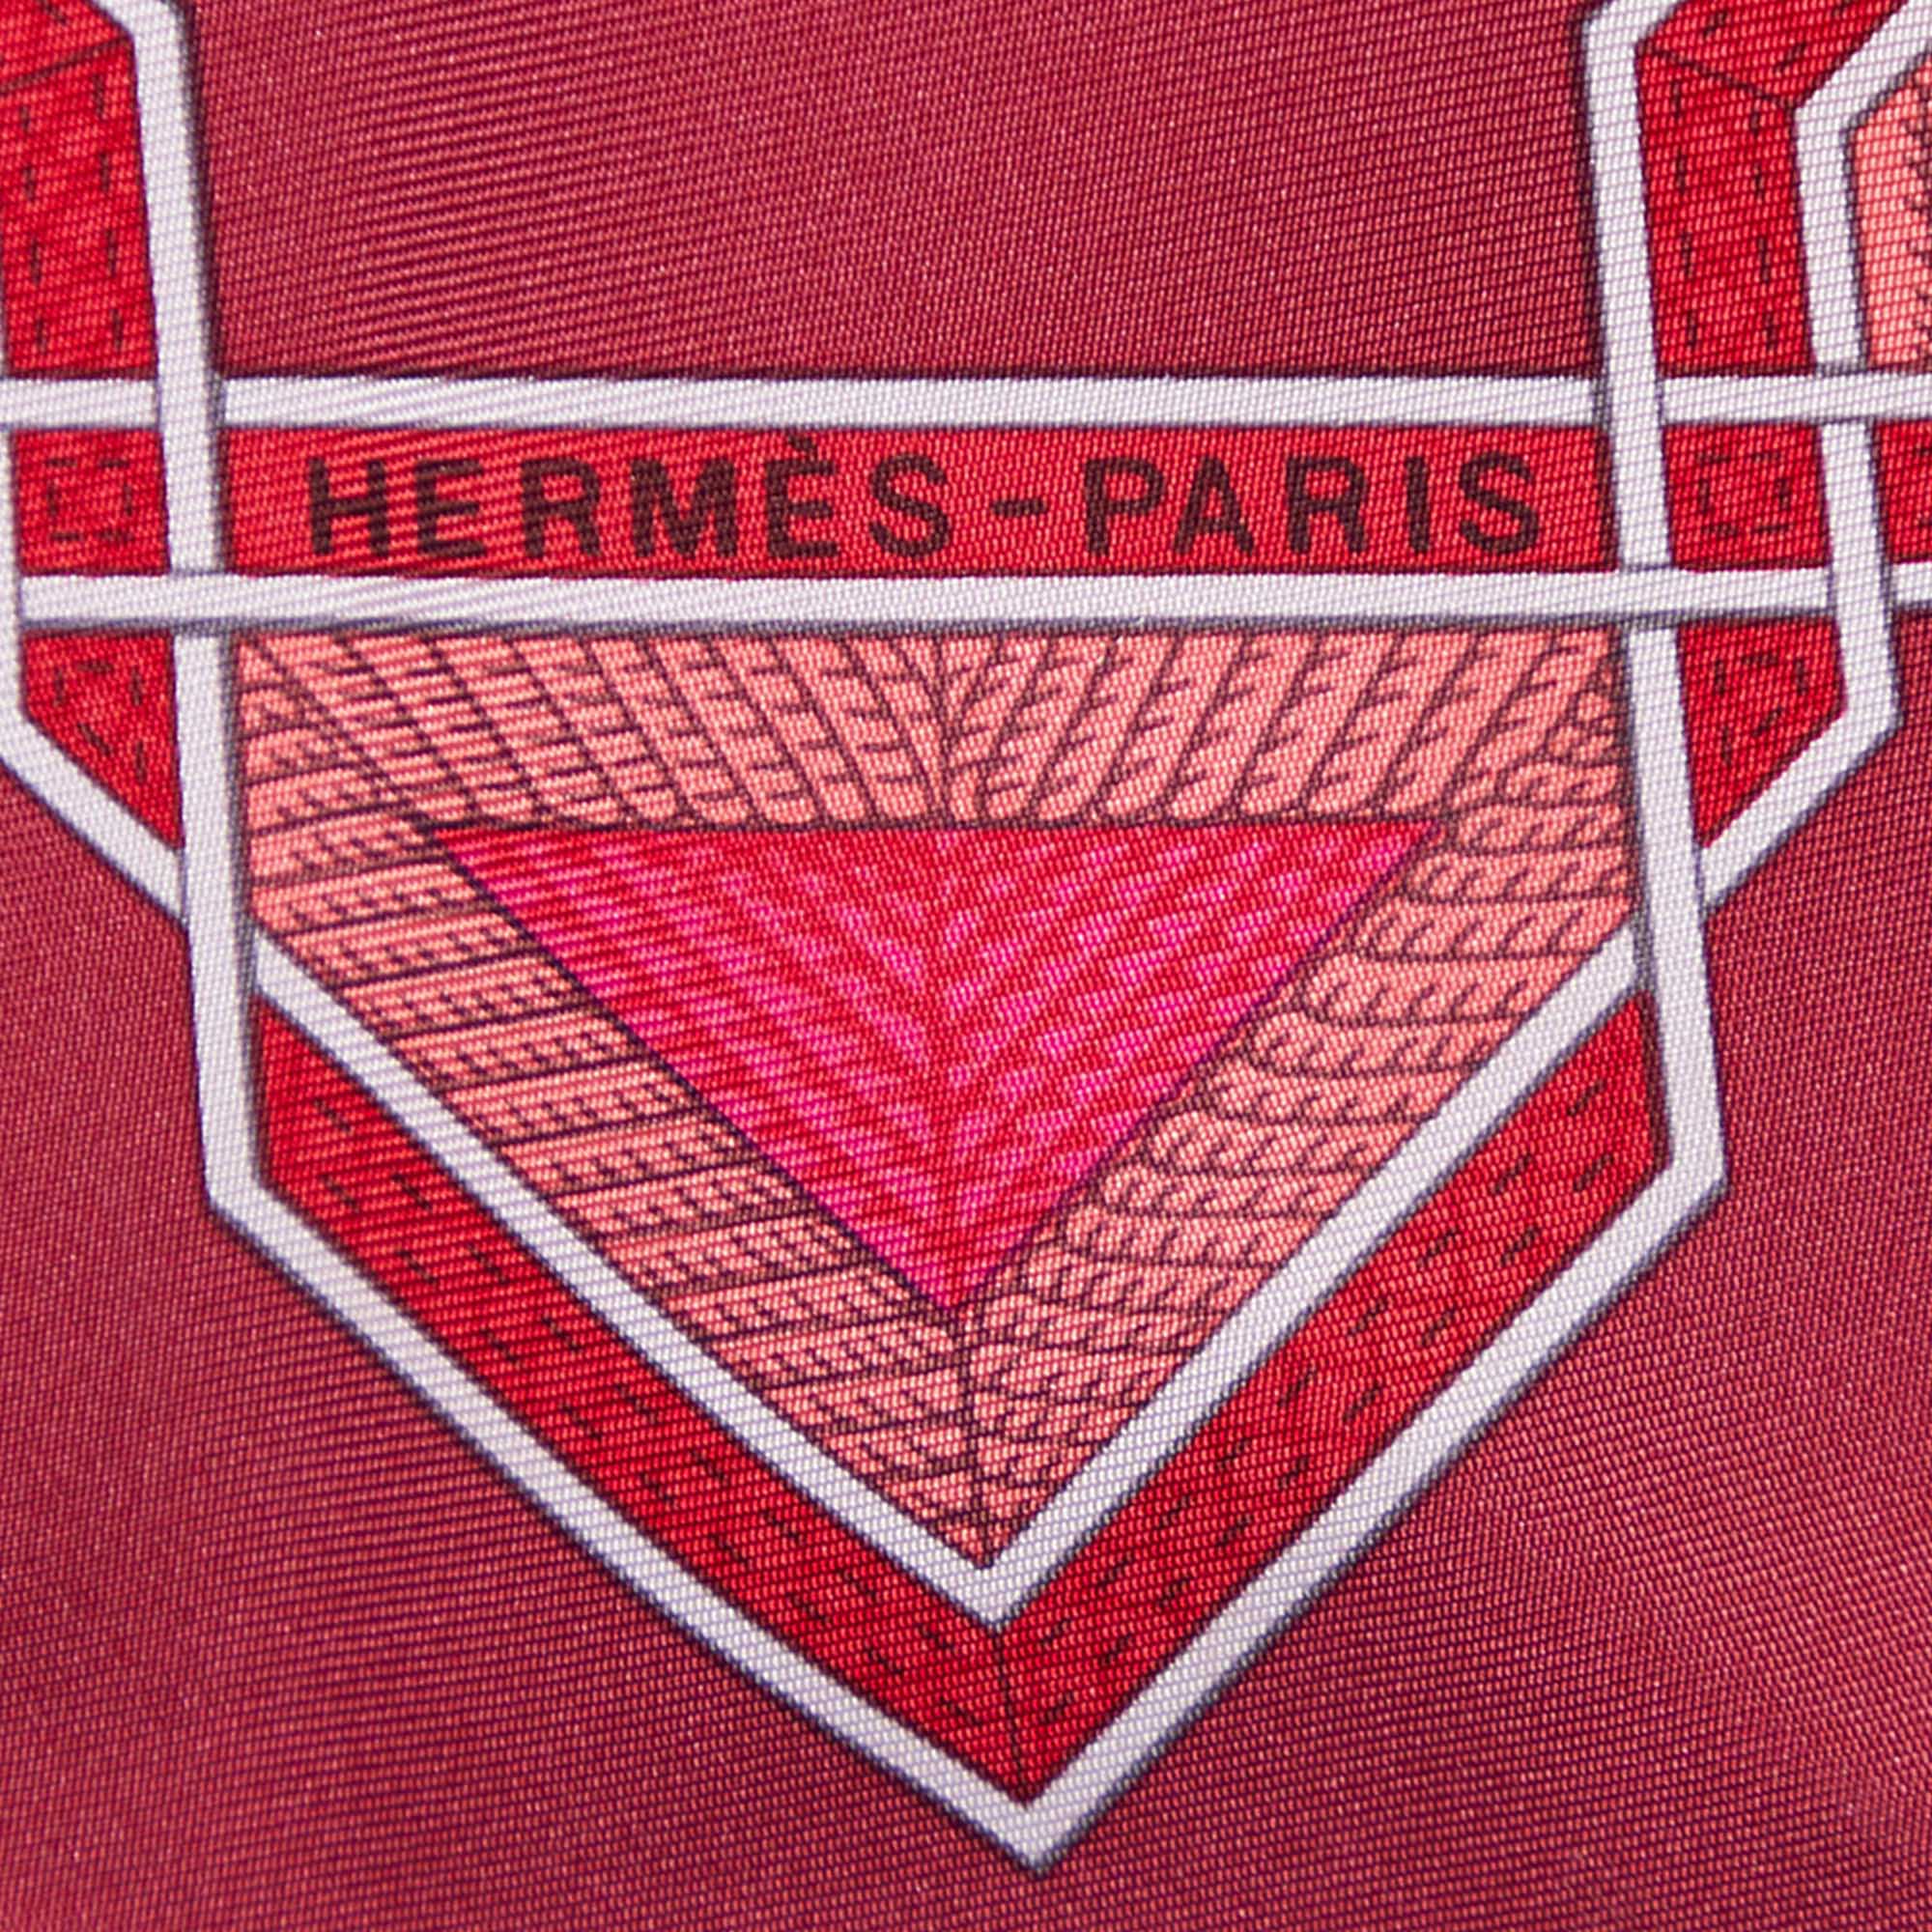 Hermes Pink Cuirs Du Desert Printed Silk Square Scarf